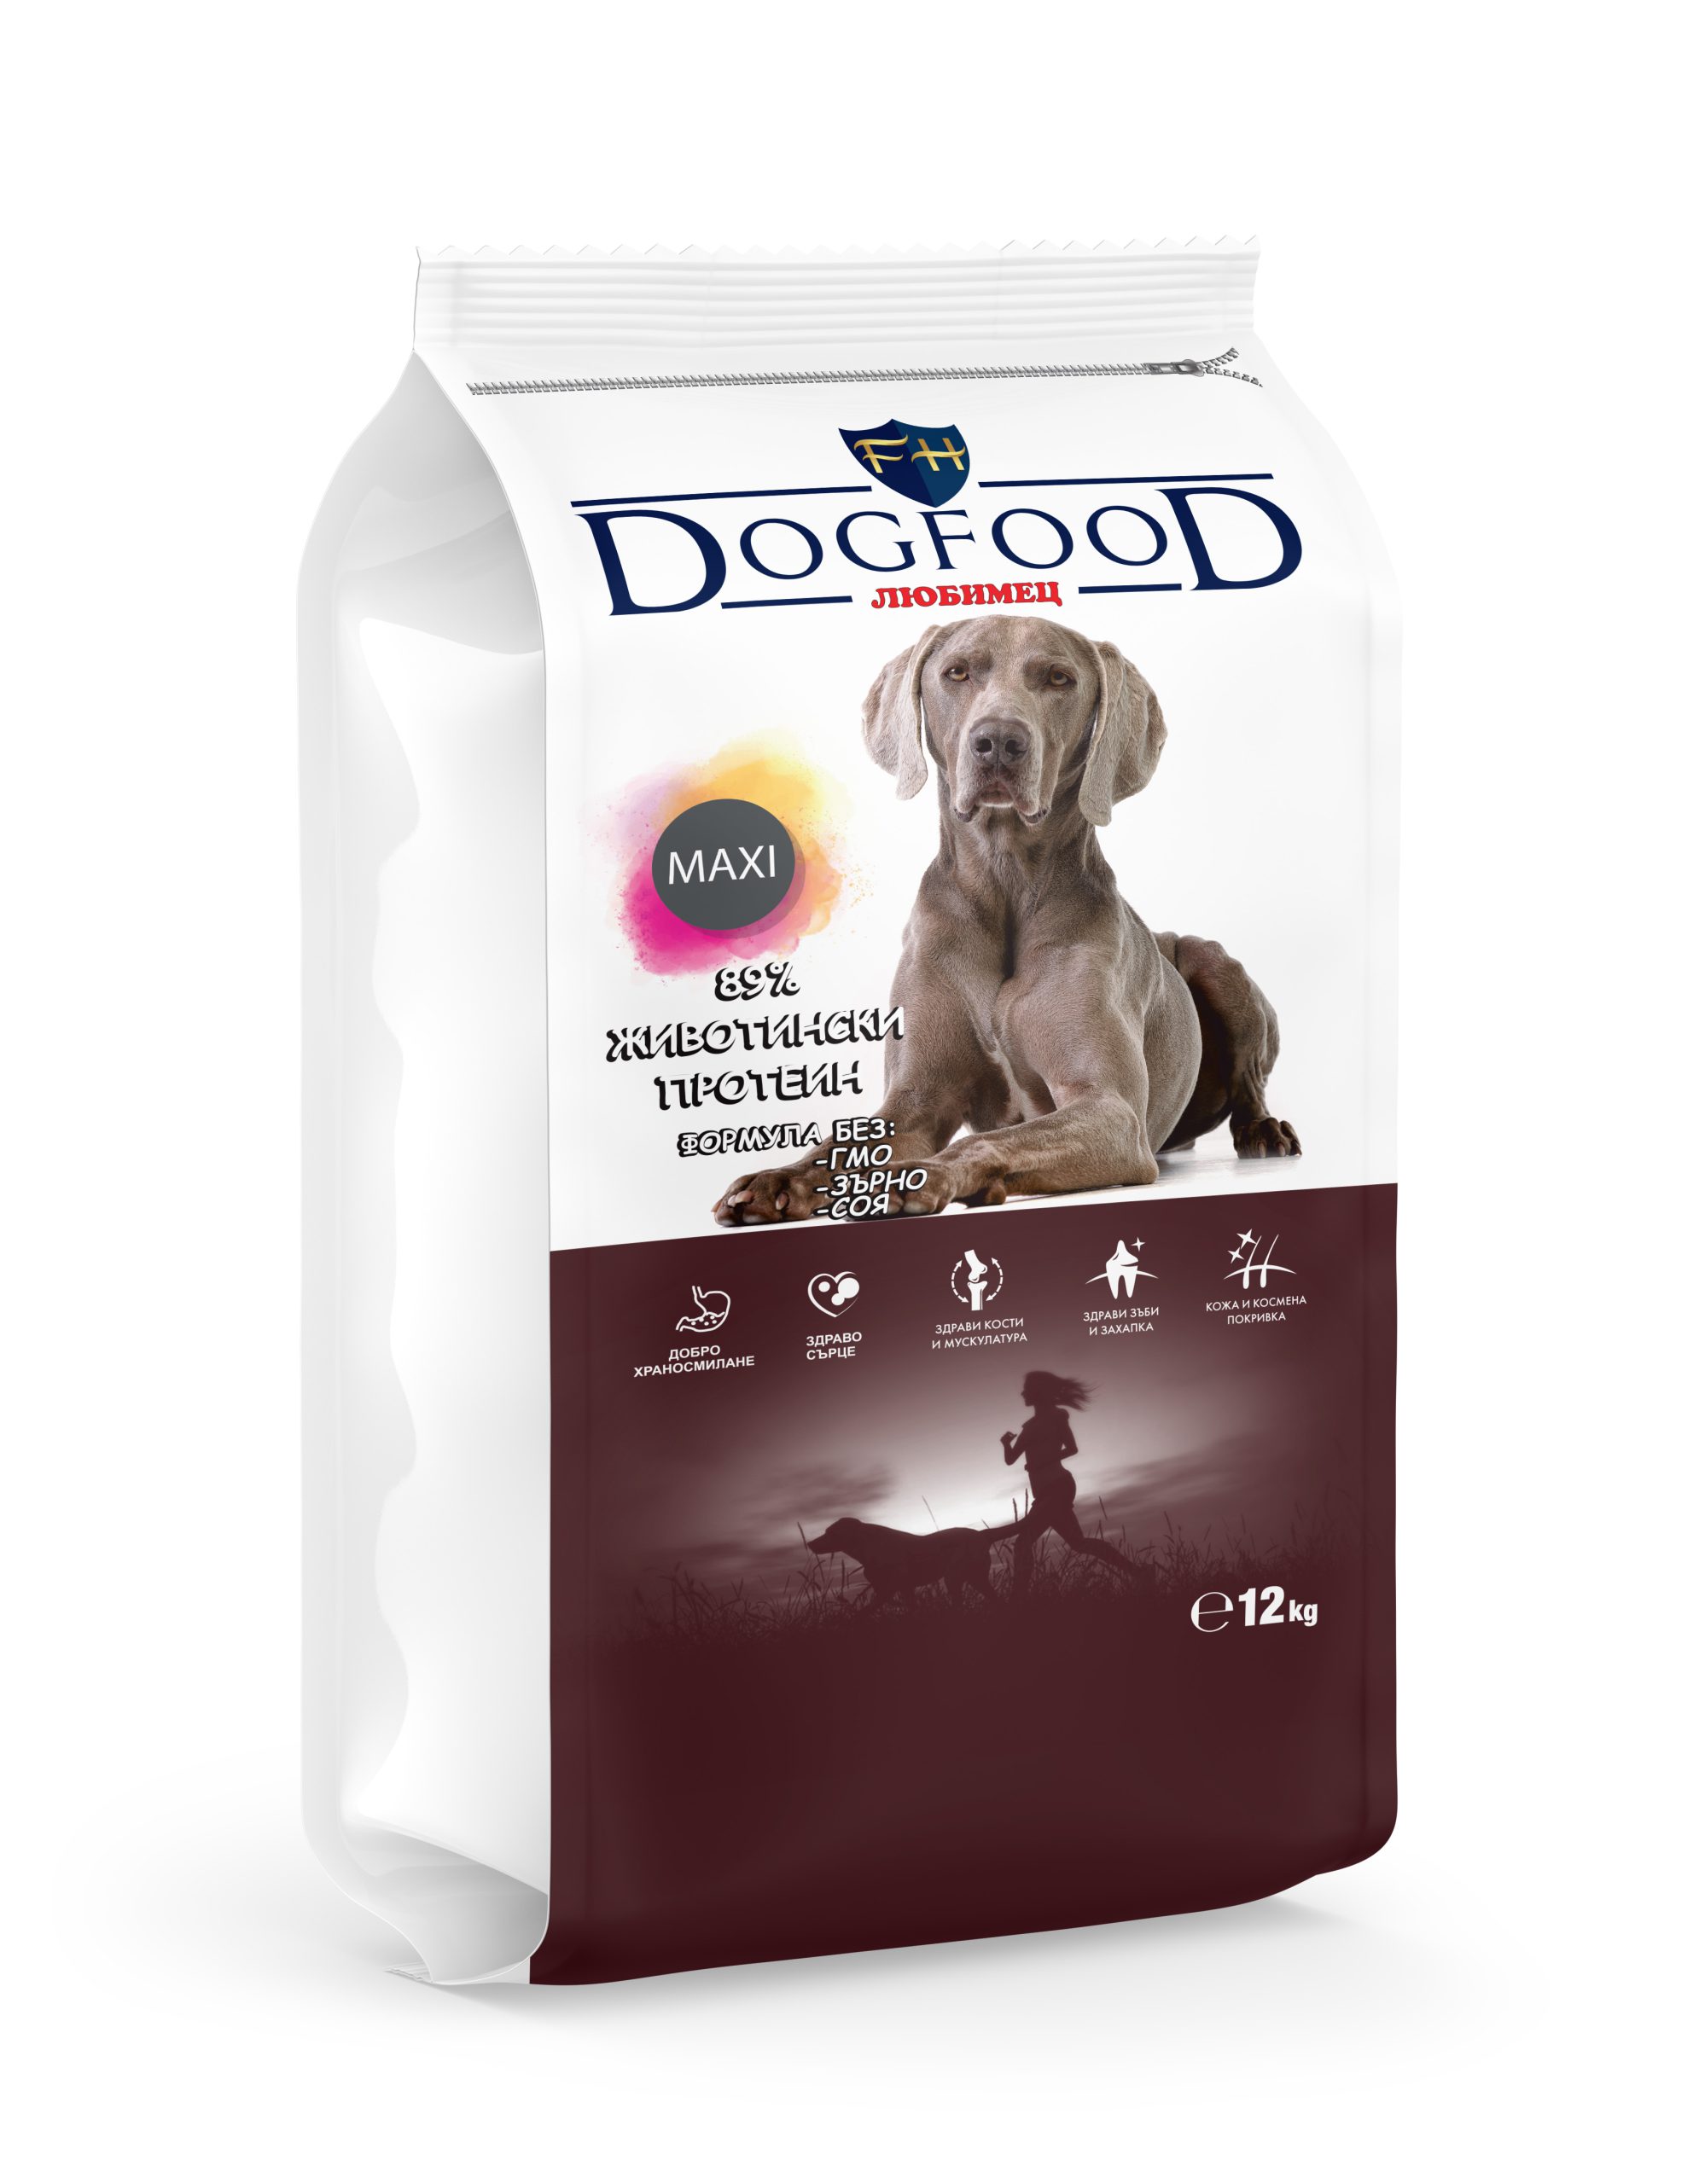 Premium dog food Maxi 12kg